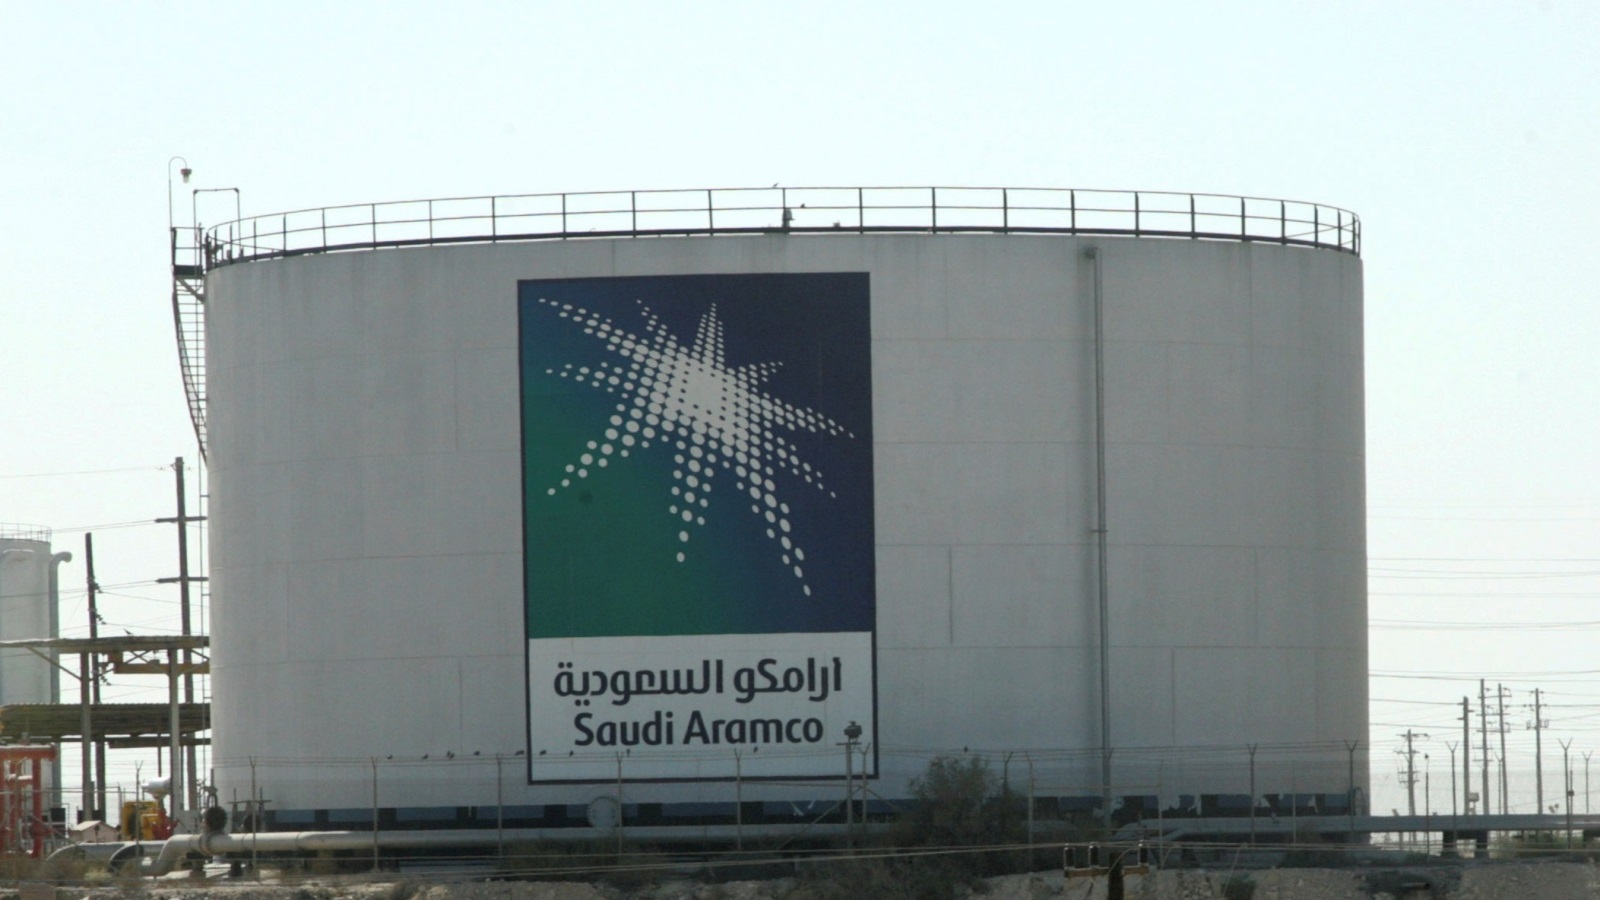 ‪صادرات السعودية من النفط الخام بلغت 2.66 تريليون دولا‬ صادرات السعودية من النفط الخام بلغت 2.66 تريليون دولار خلال الفترة 2004-2016 (رويترز)